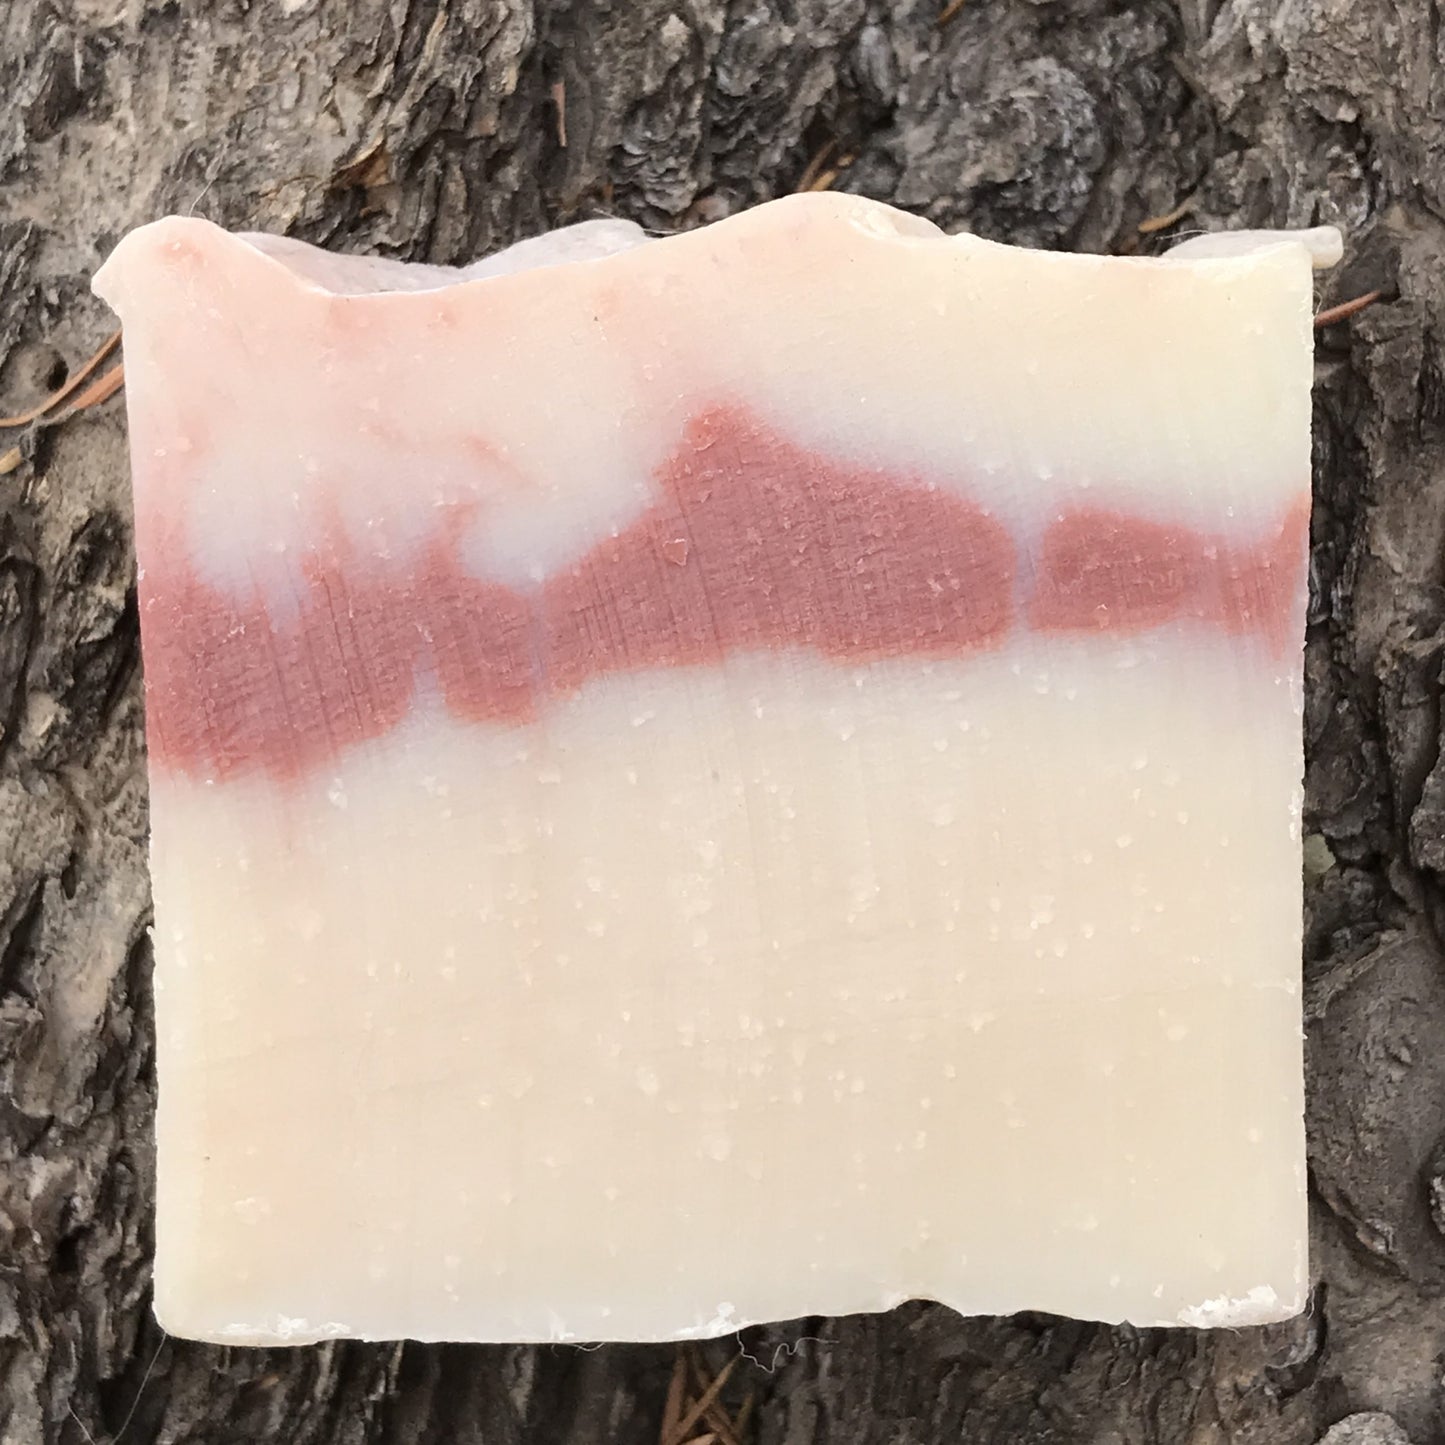 Magnolia Soap